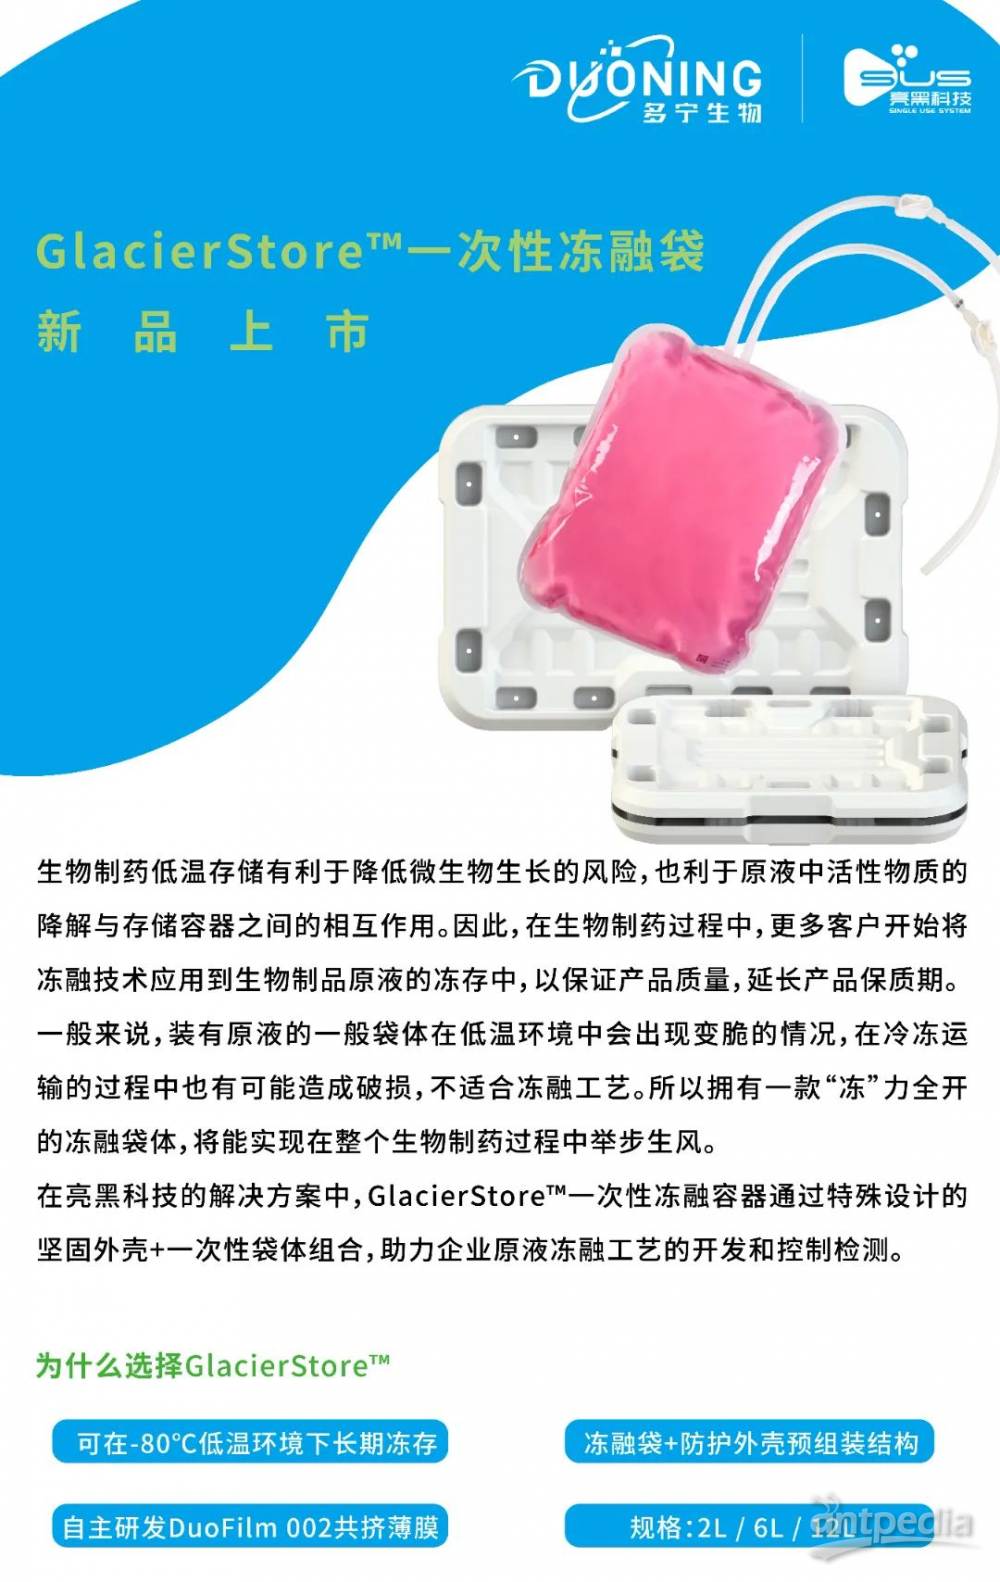 GlacierStore™ 一次性冻融袋新品上市，“冻”力全开